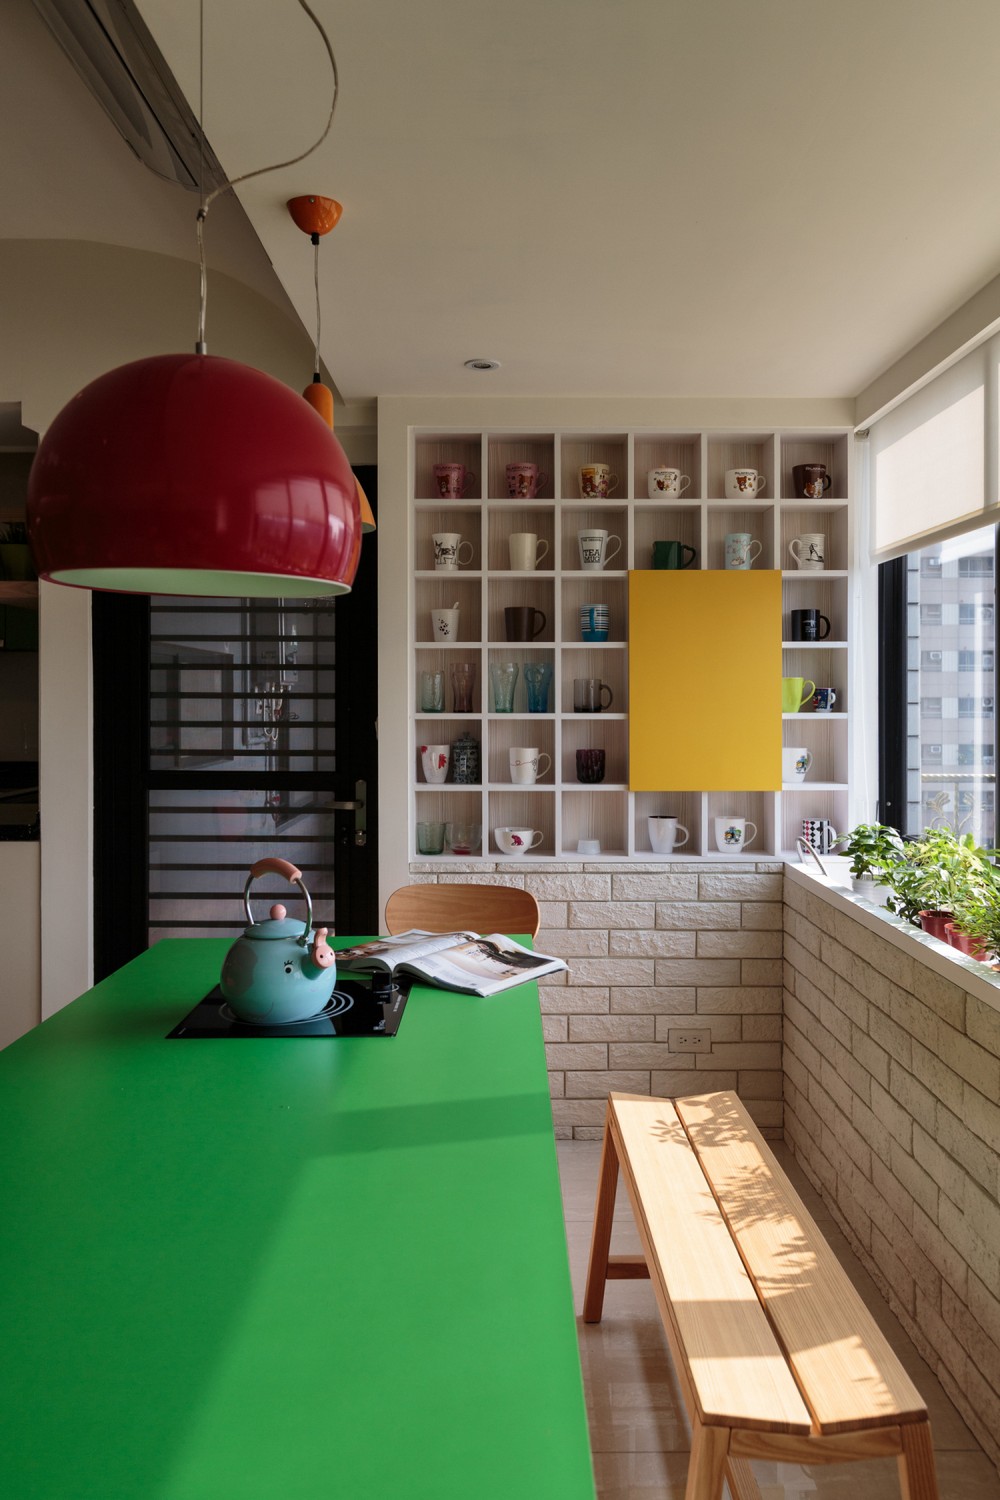 Красочный семейный дом от арт-студии house design co — средоточие позитива и элегантности, тайвань